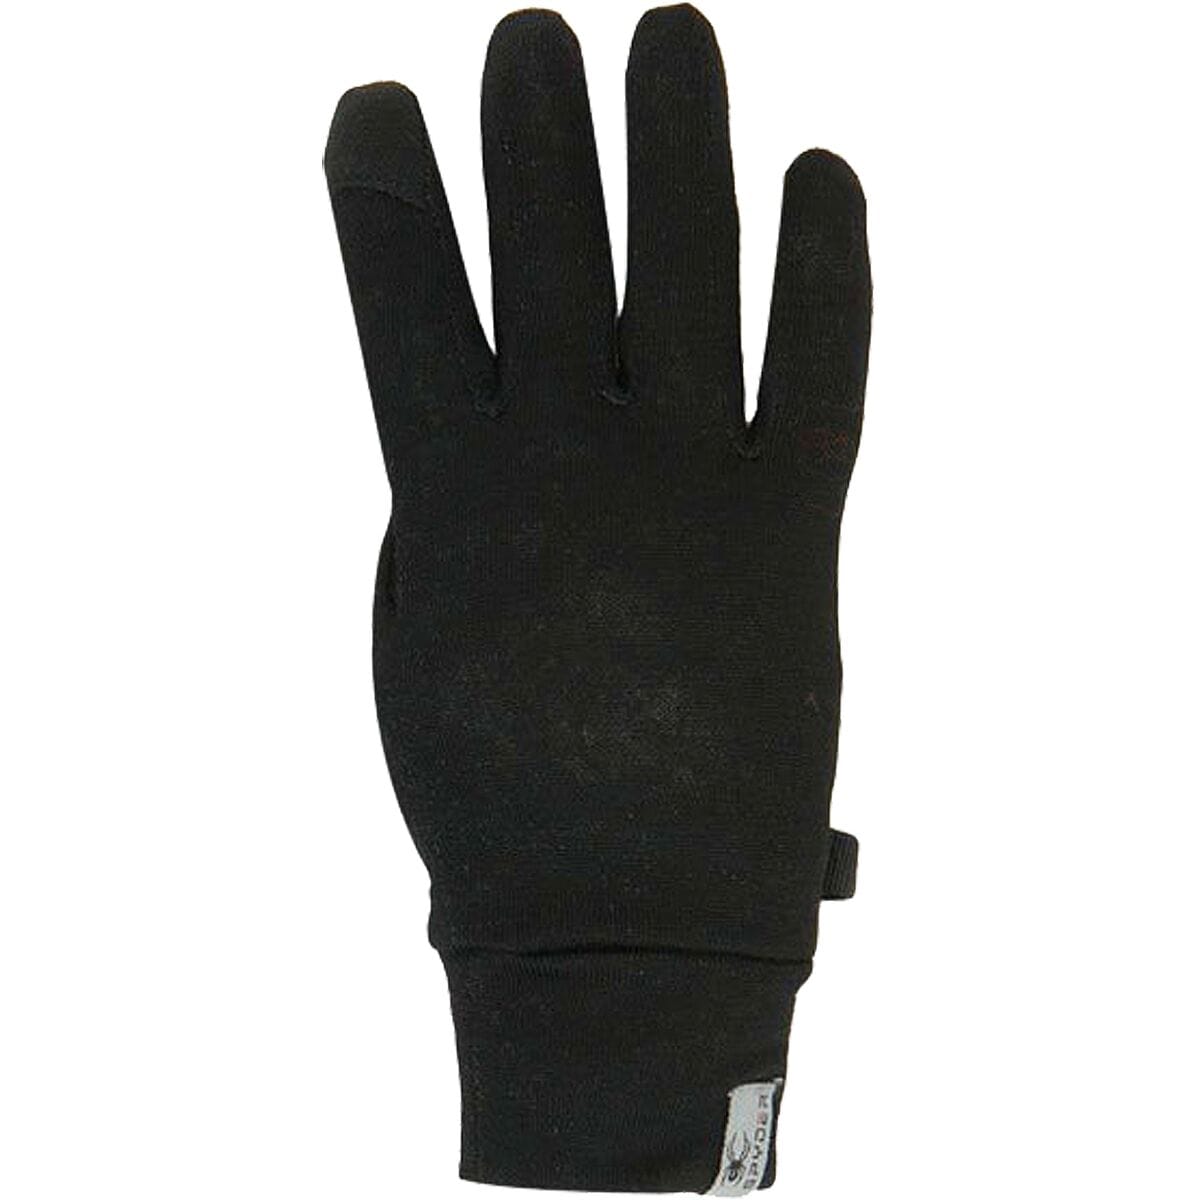 Spyder Centennial Liner Glove - Women's